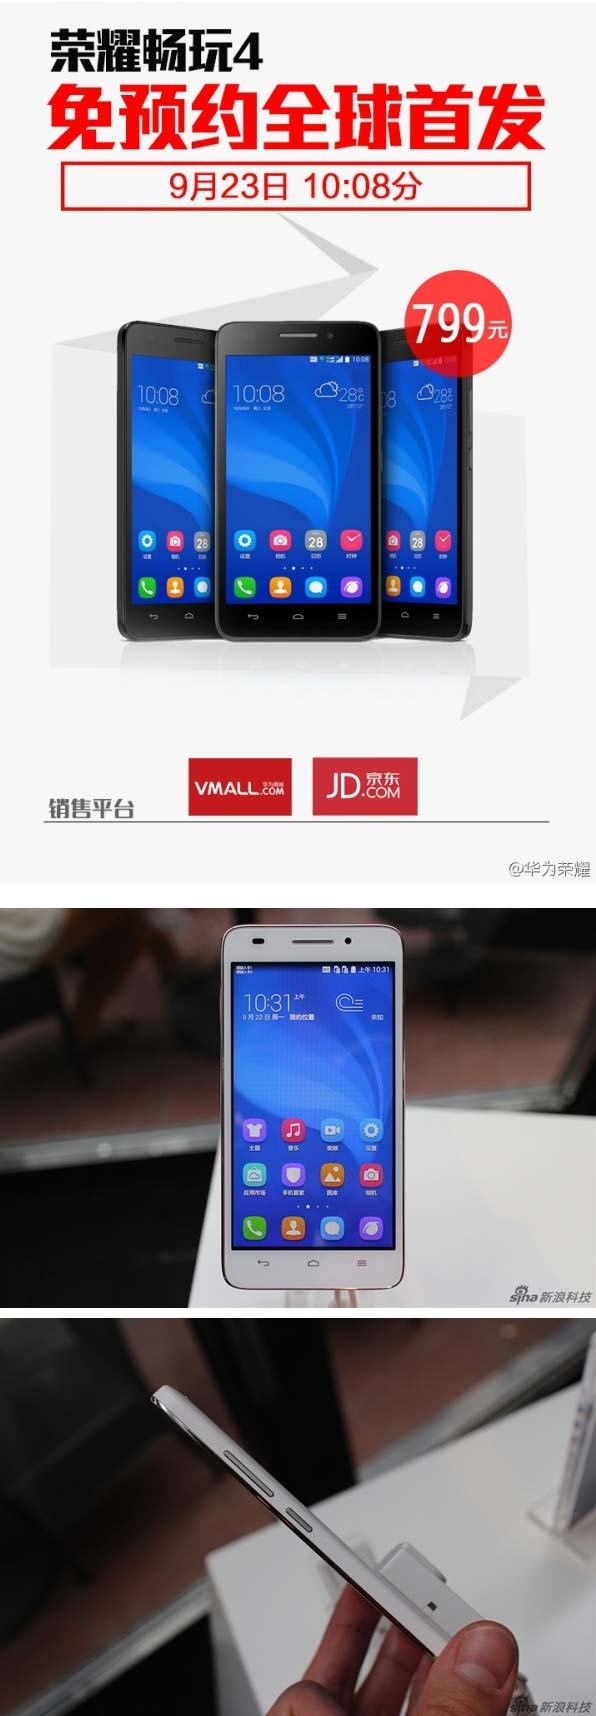 На фото показано устройство Honor 4 Play от Huawei